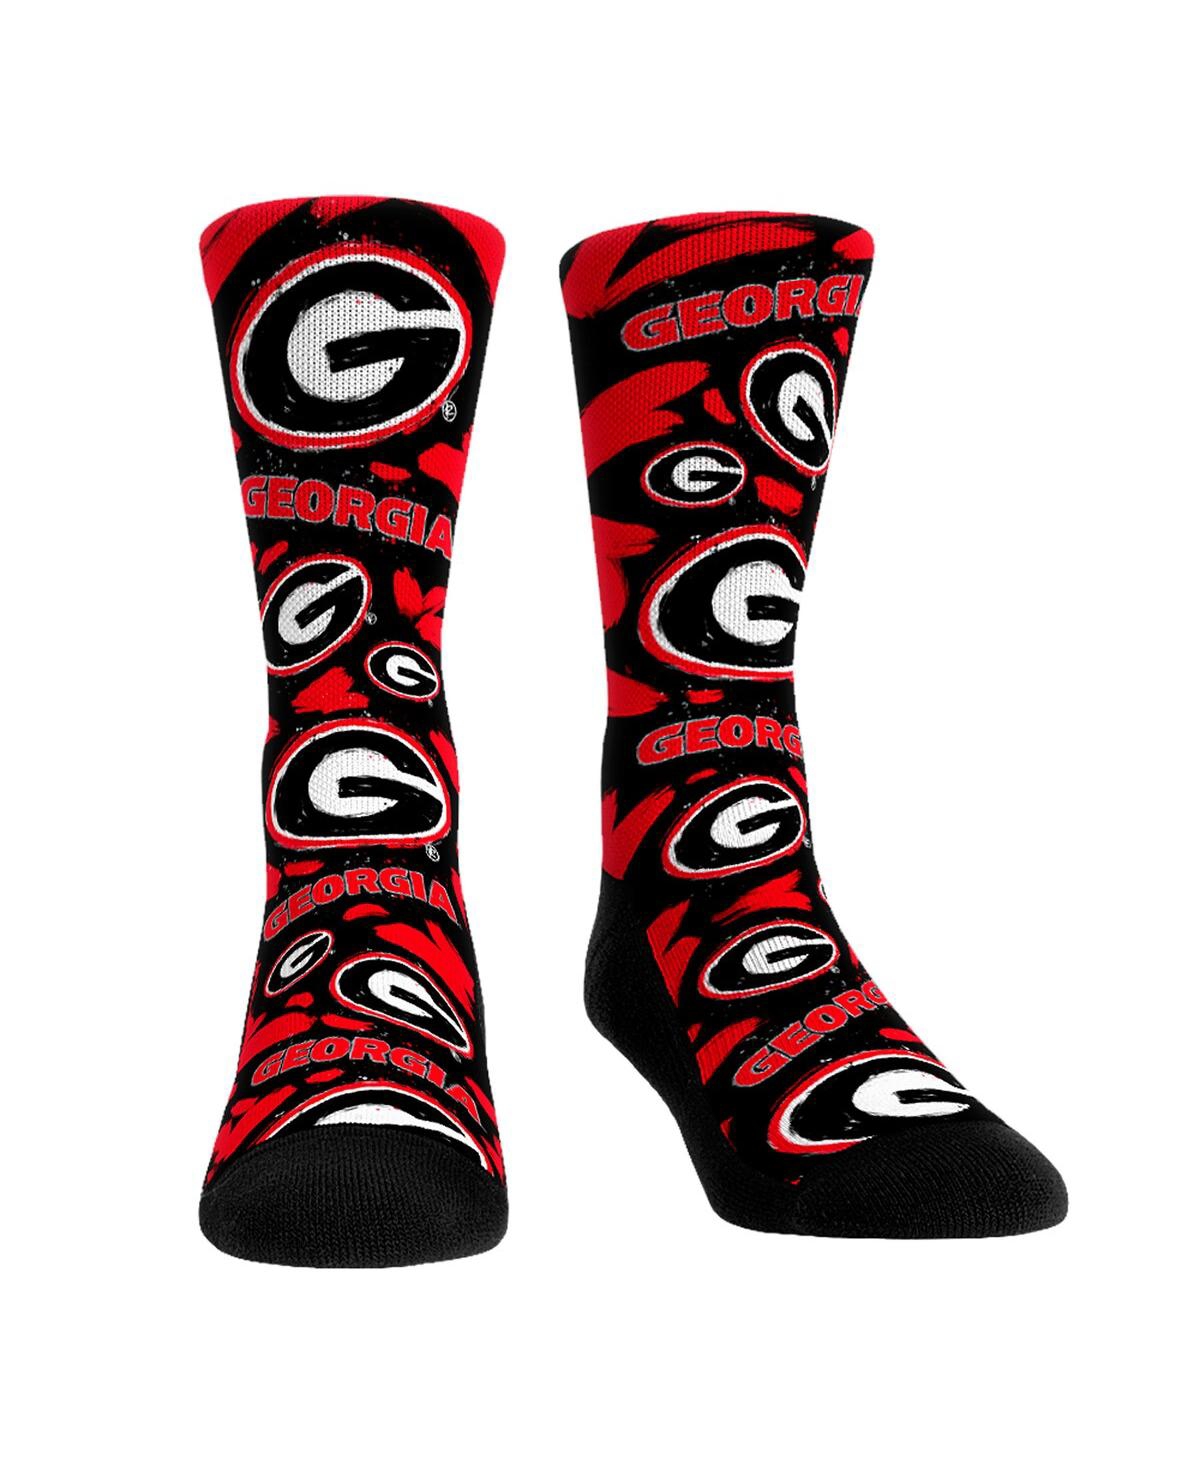 Men's and Women's Rock 'Em Socks Georgia Bulldogs Allover Logo and Paint Crew Socks - Multi